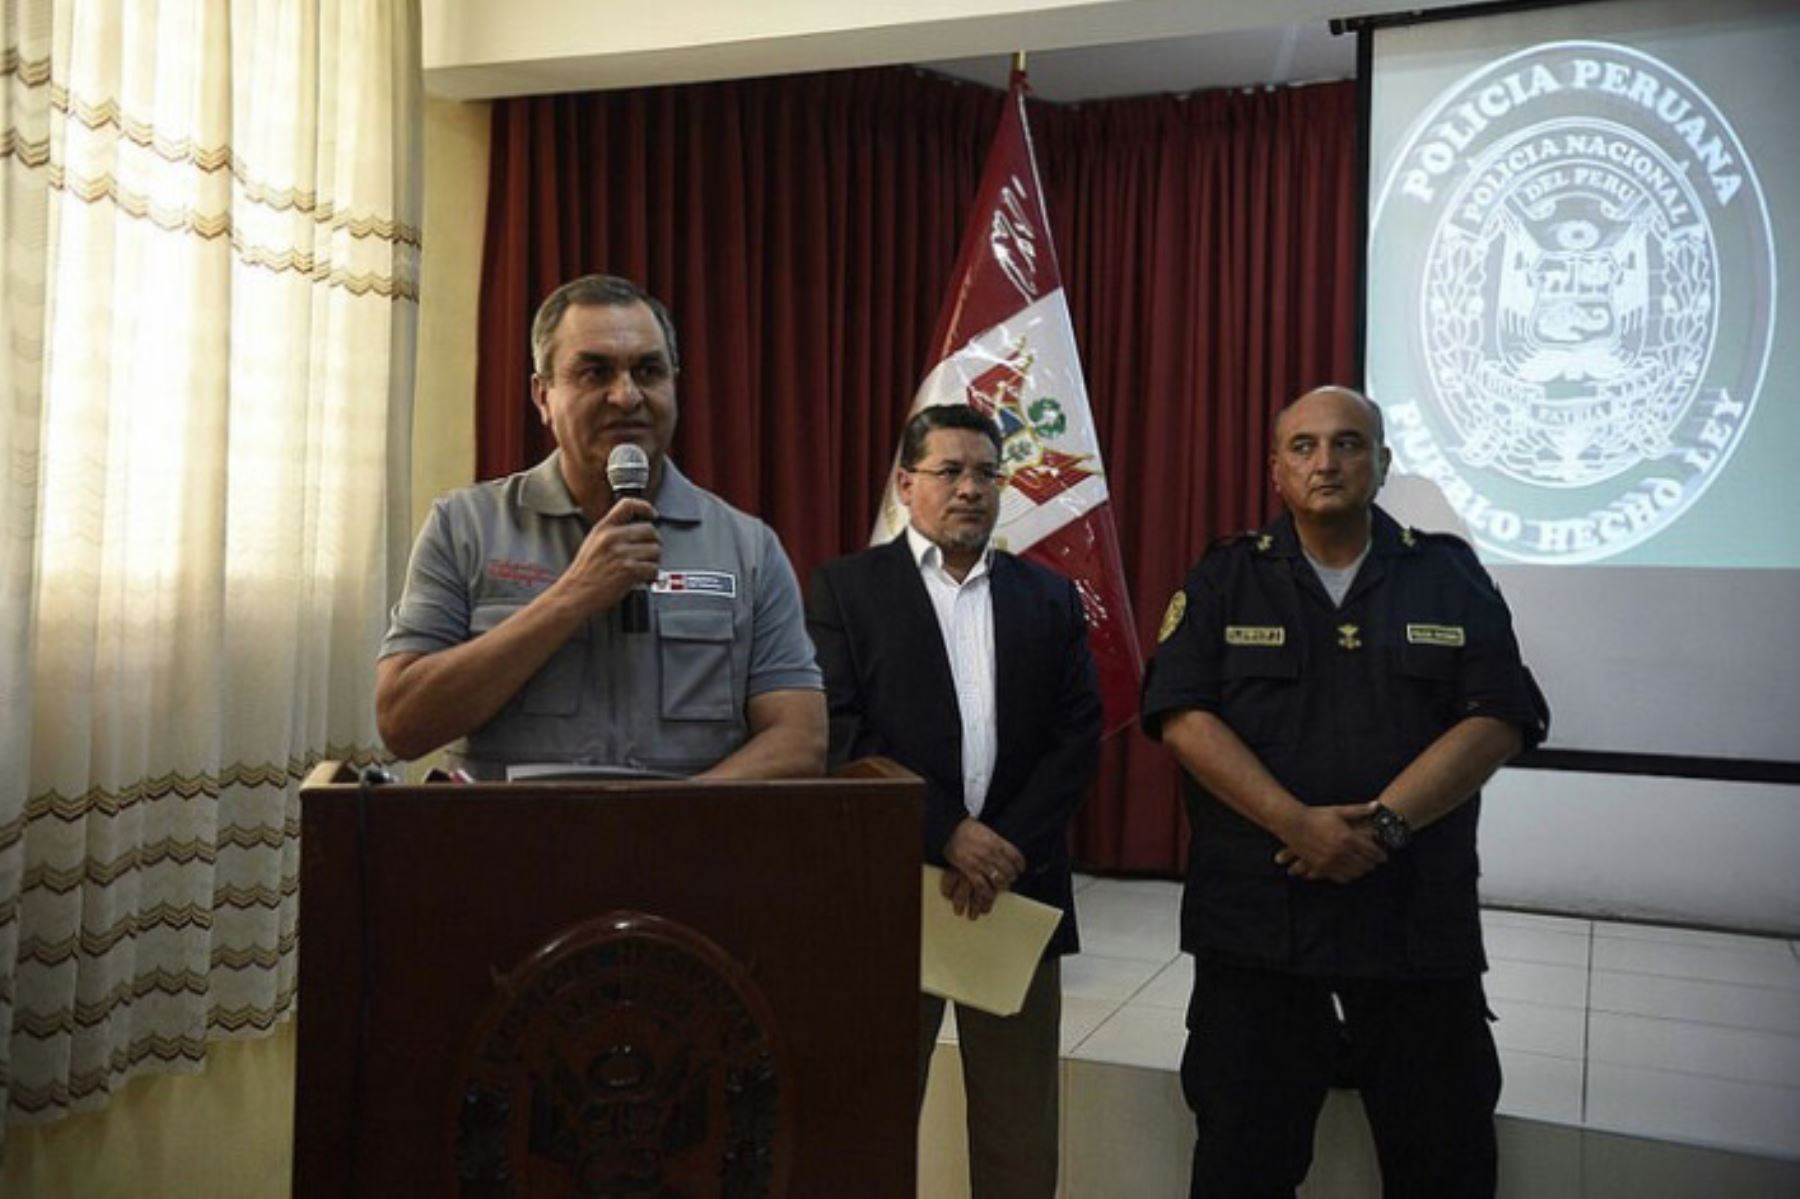 El ministro del Interior, Vicente Romero Fernández, anunció hoy en Trujillo la ubicación, identificación y captura de dos de los presuntos delincuentes que asaltaron el microbús de la empresa Cortijo e hirieron a un policía en Trujillo.